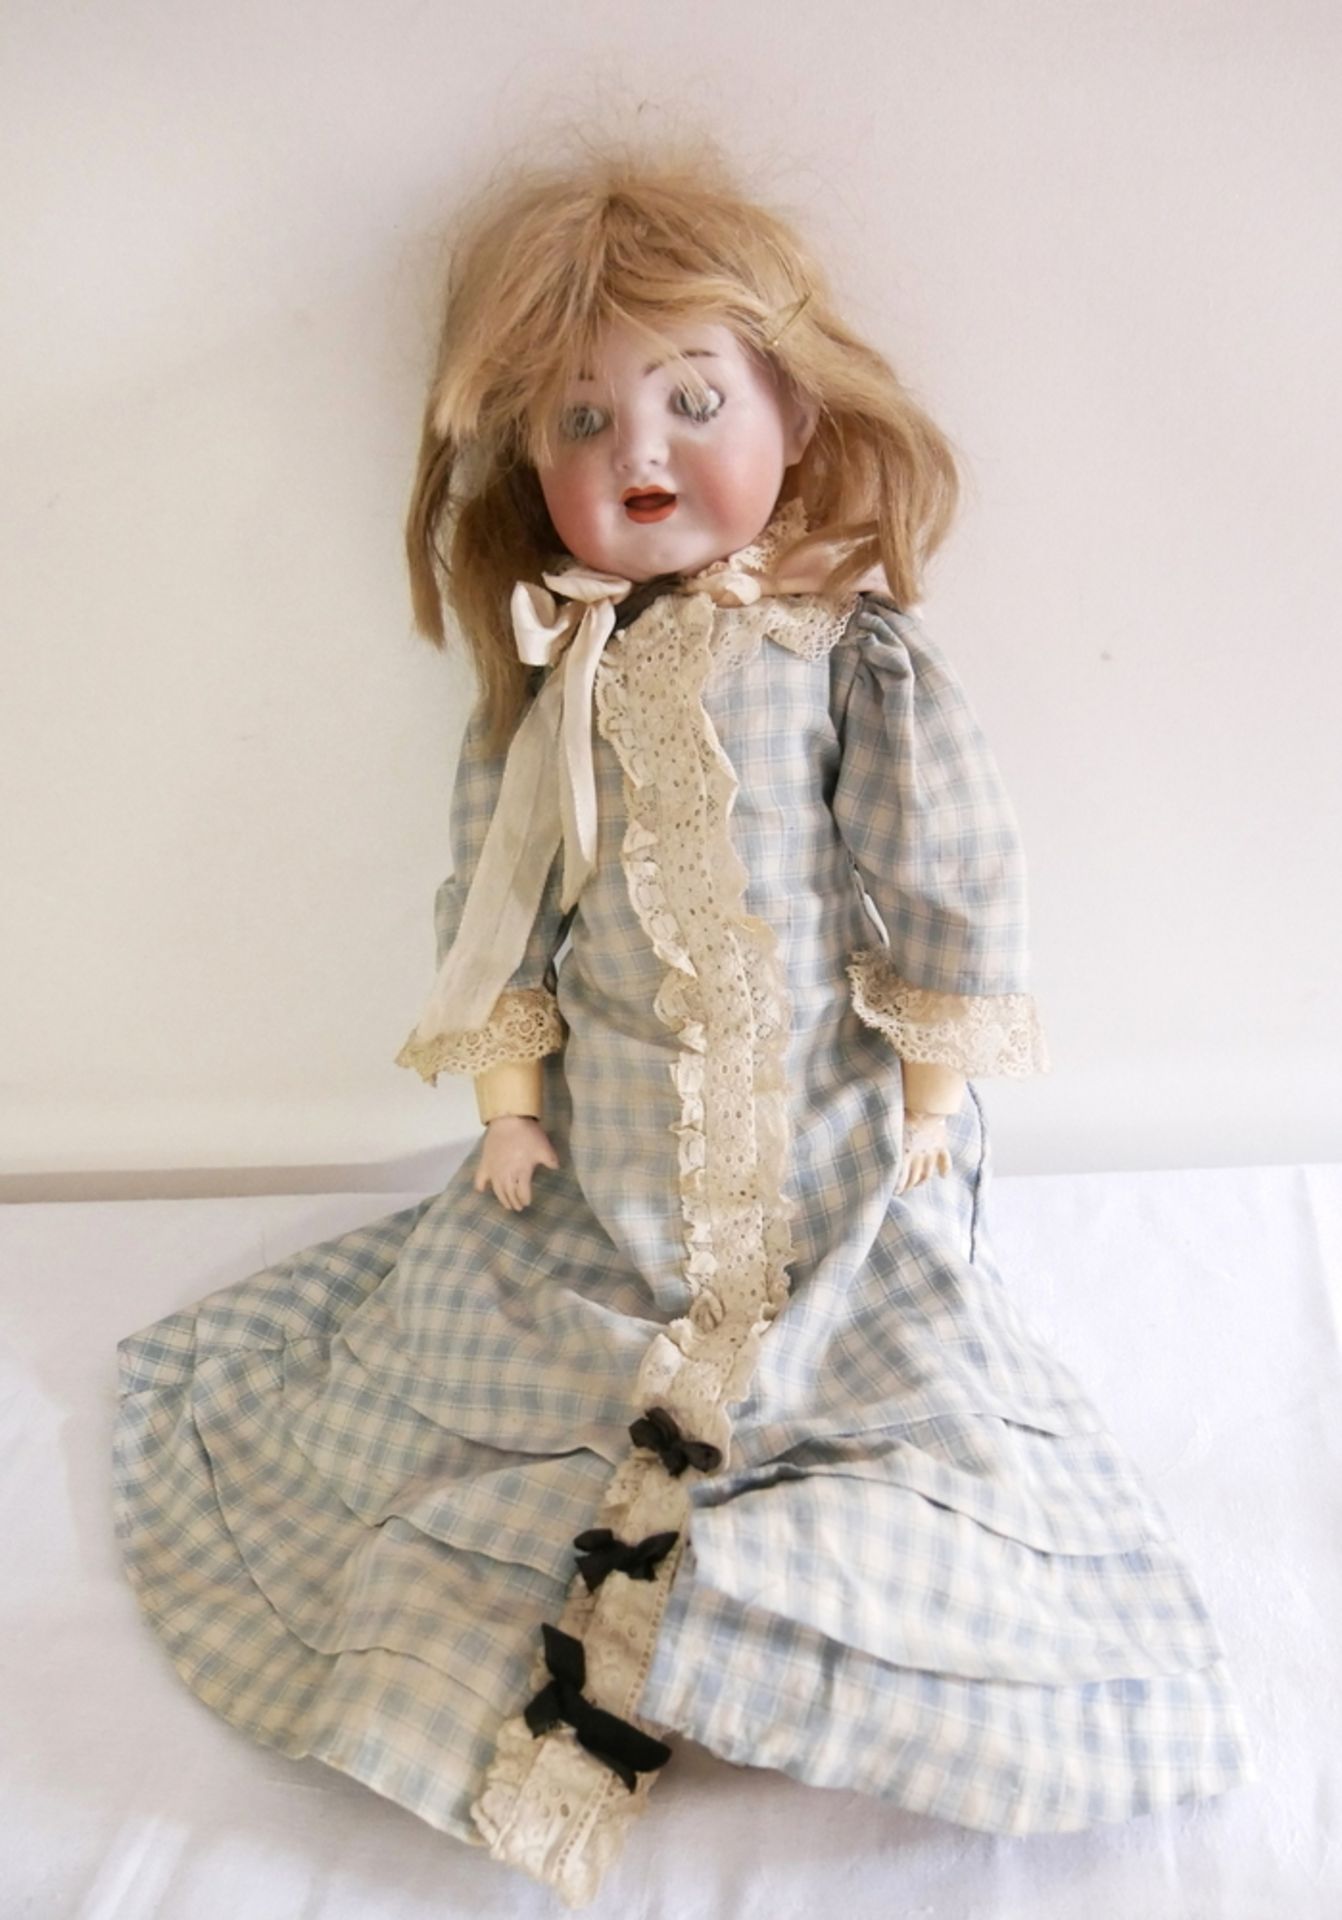 Porzellankopf Puppe Simon Halbig mit Glasaugen und Massekörper, original Bekleidung. Bespielter